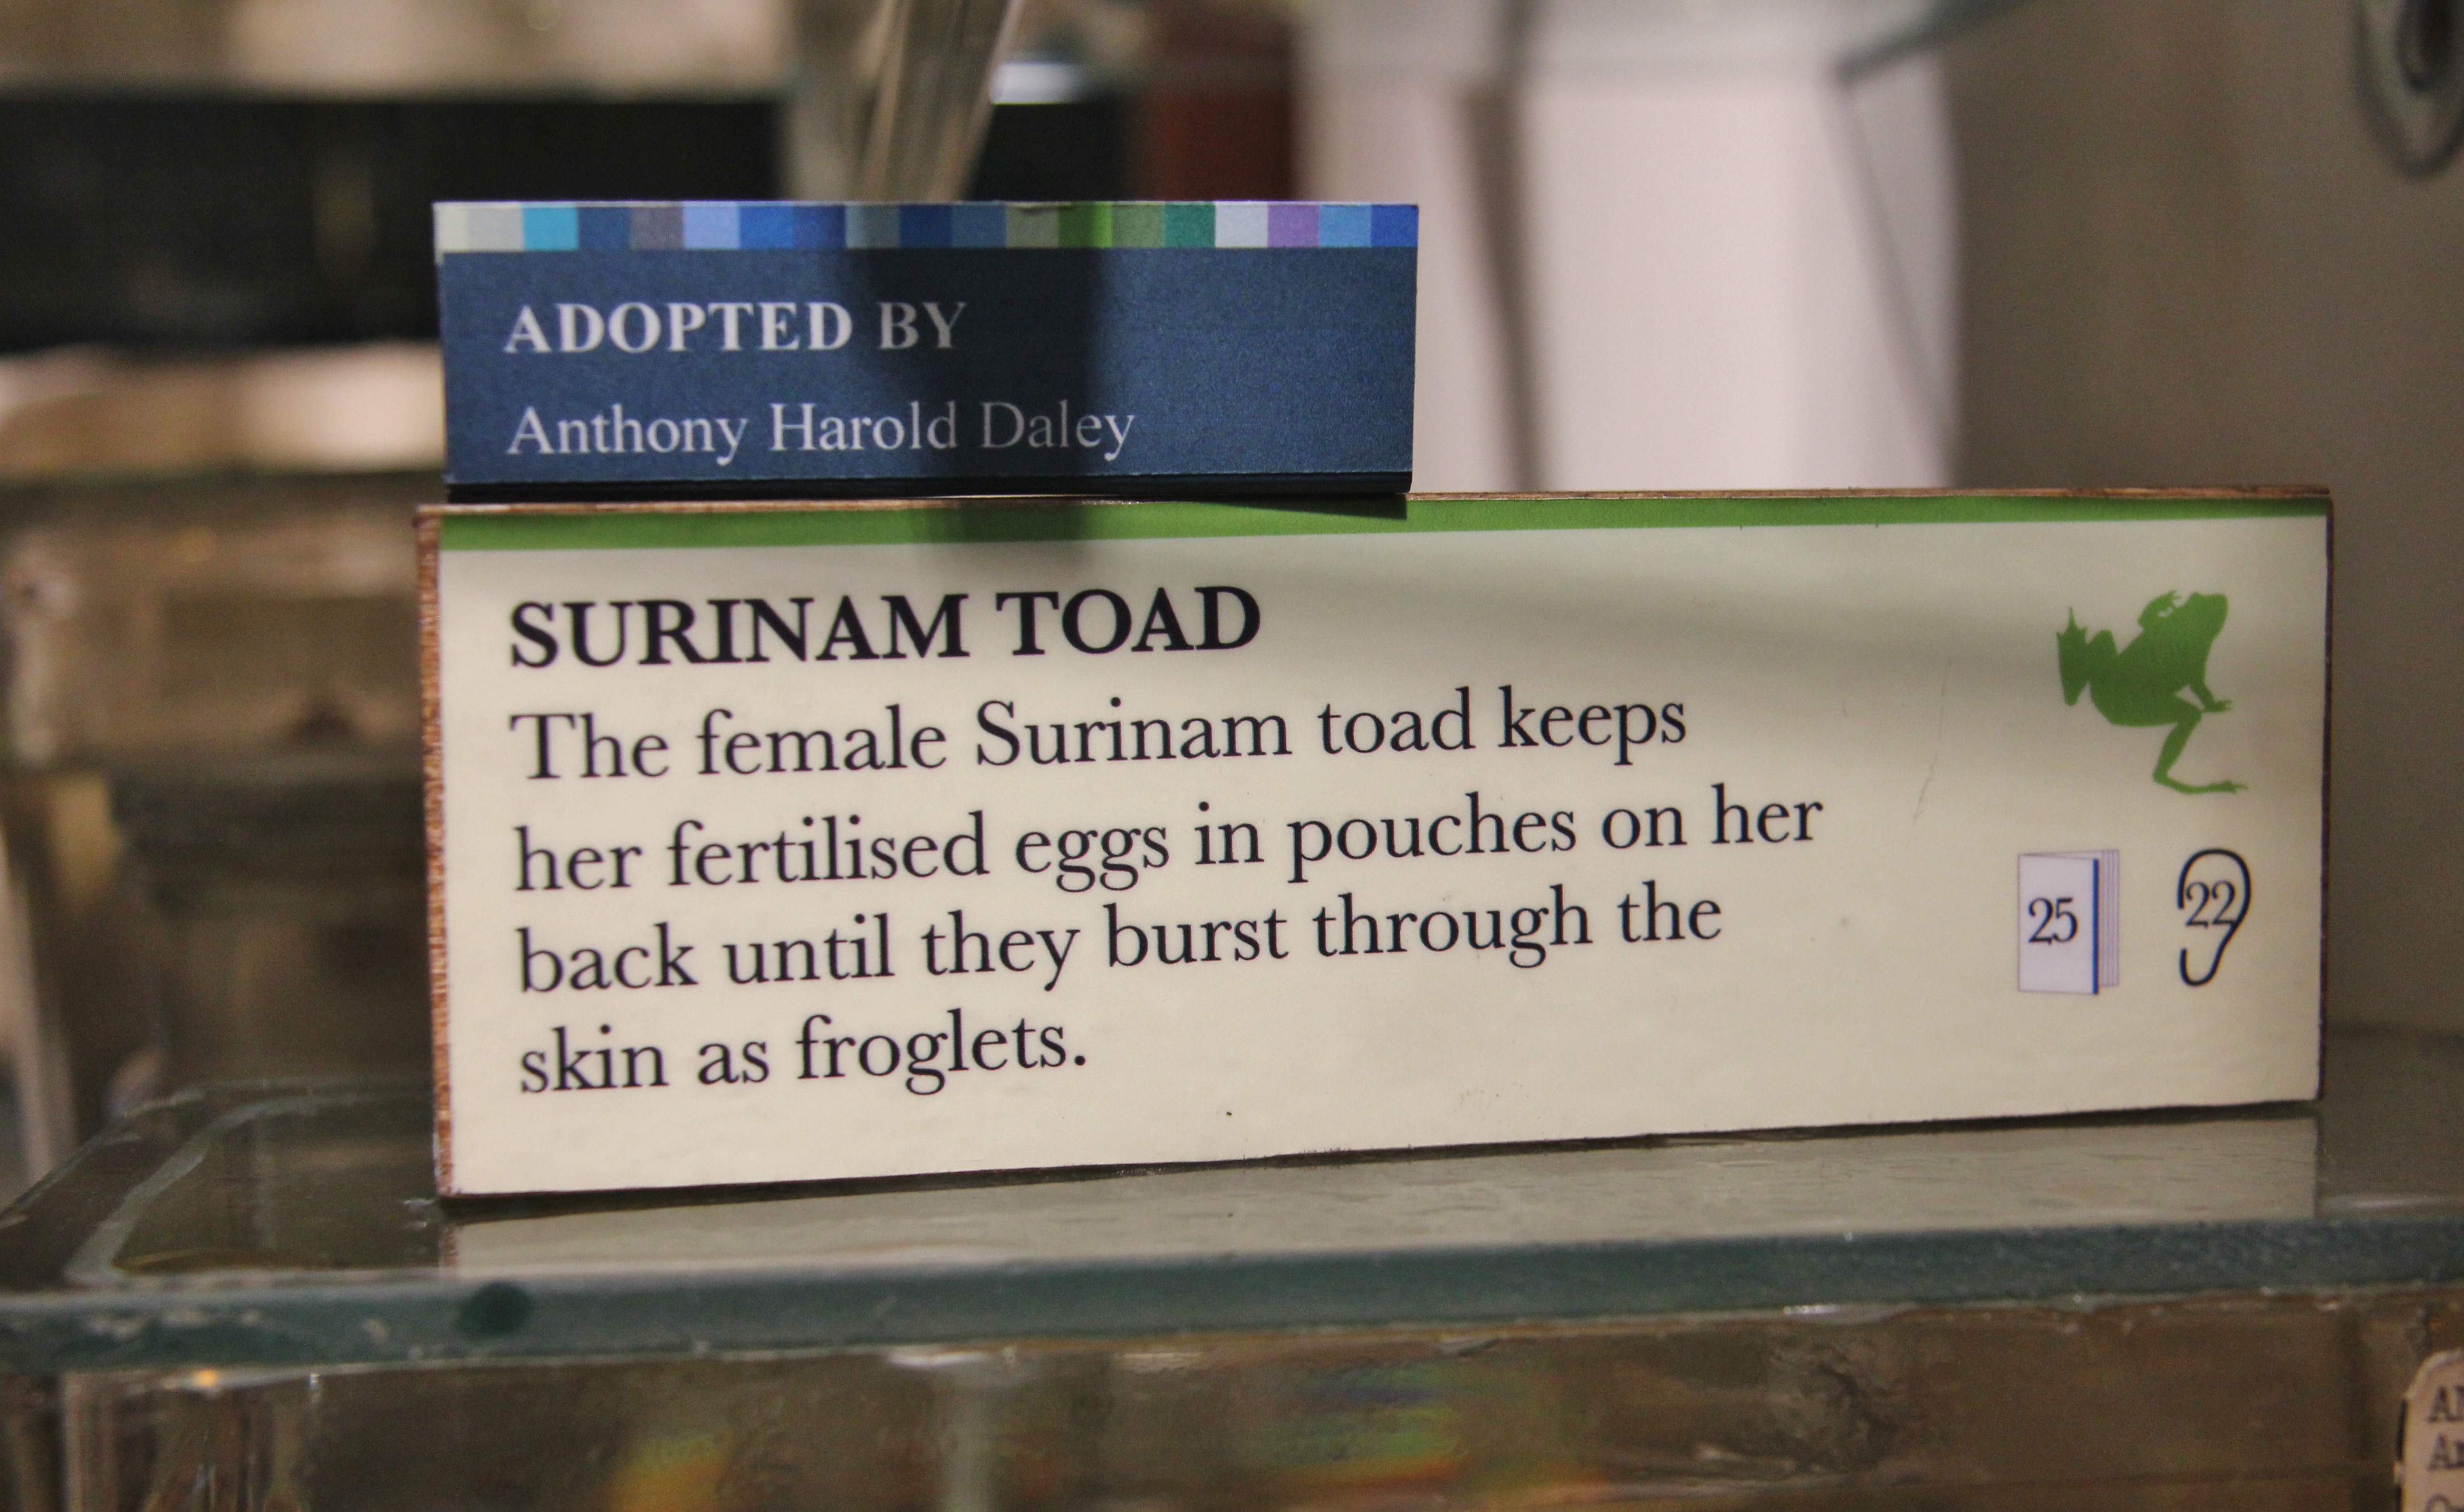 Description of Surinam Toad